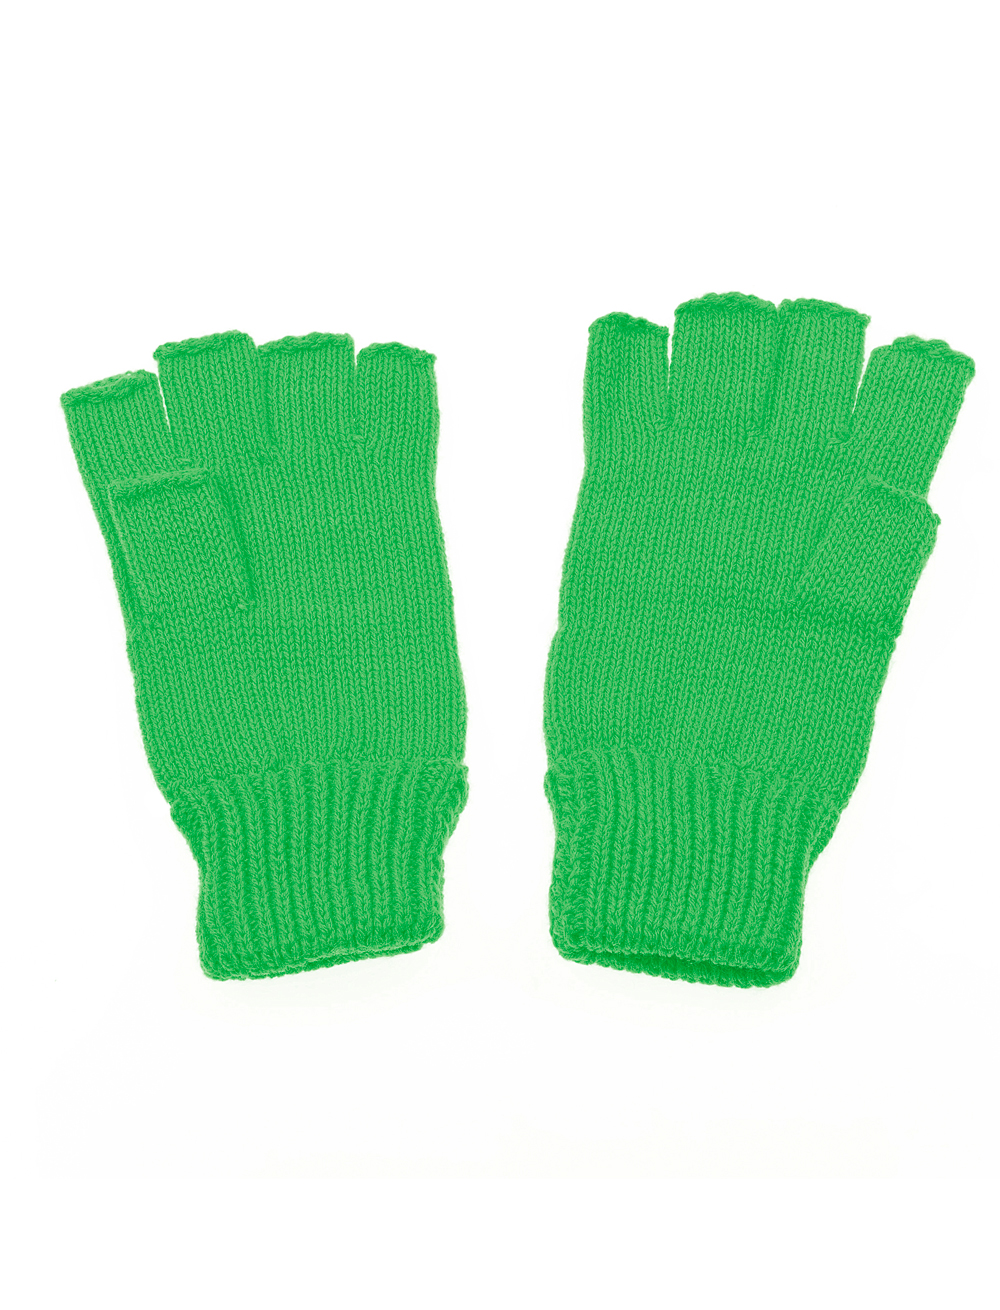 Strickhandschuhe fingerlos grün